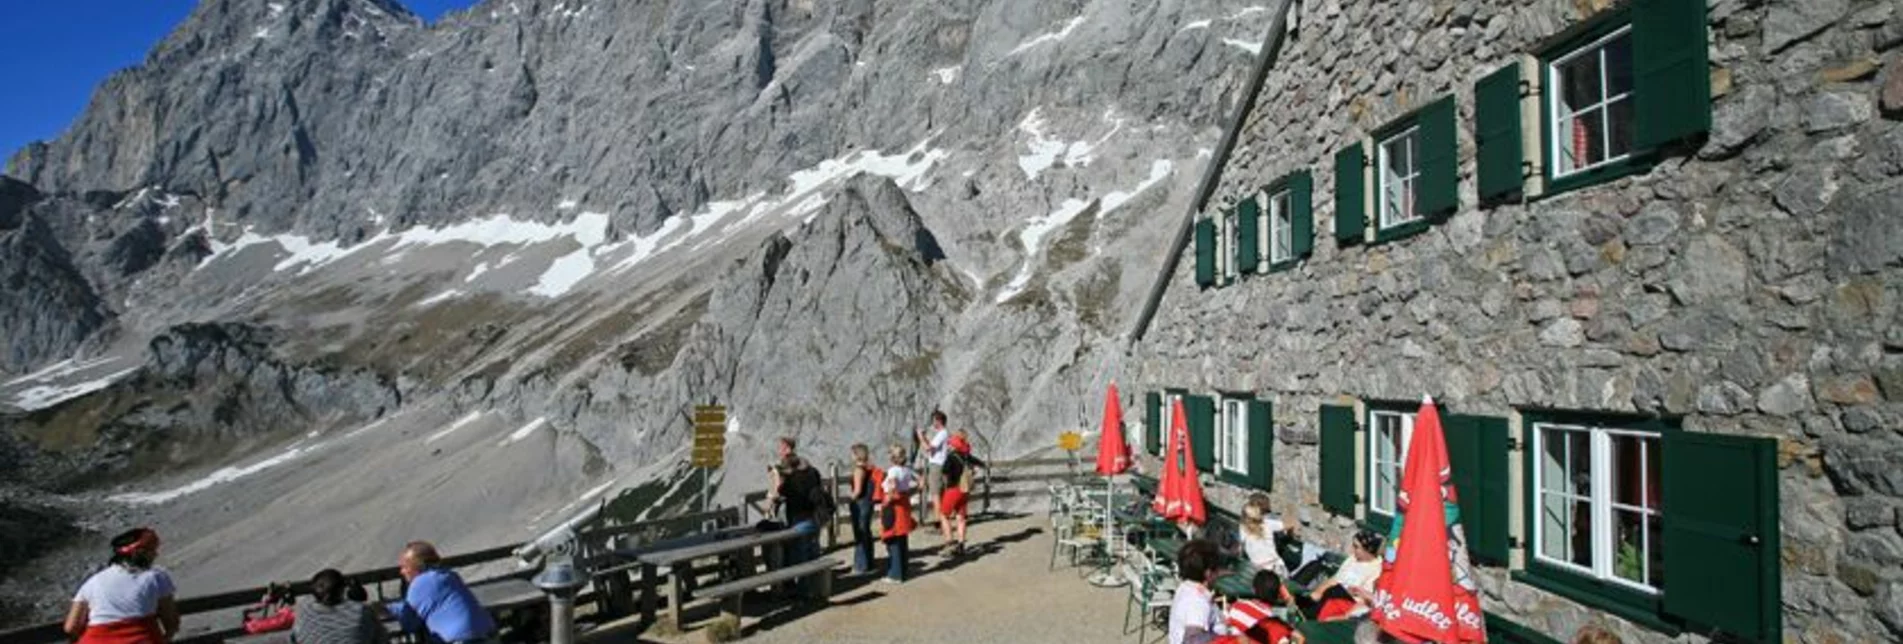 Wanderung Wanderung zur Südwandhütte - Touren-Impression #1 | © Erlebnisregion Schladming-Dachstein